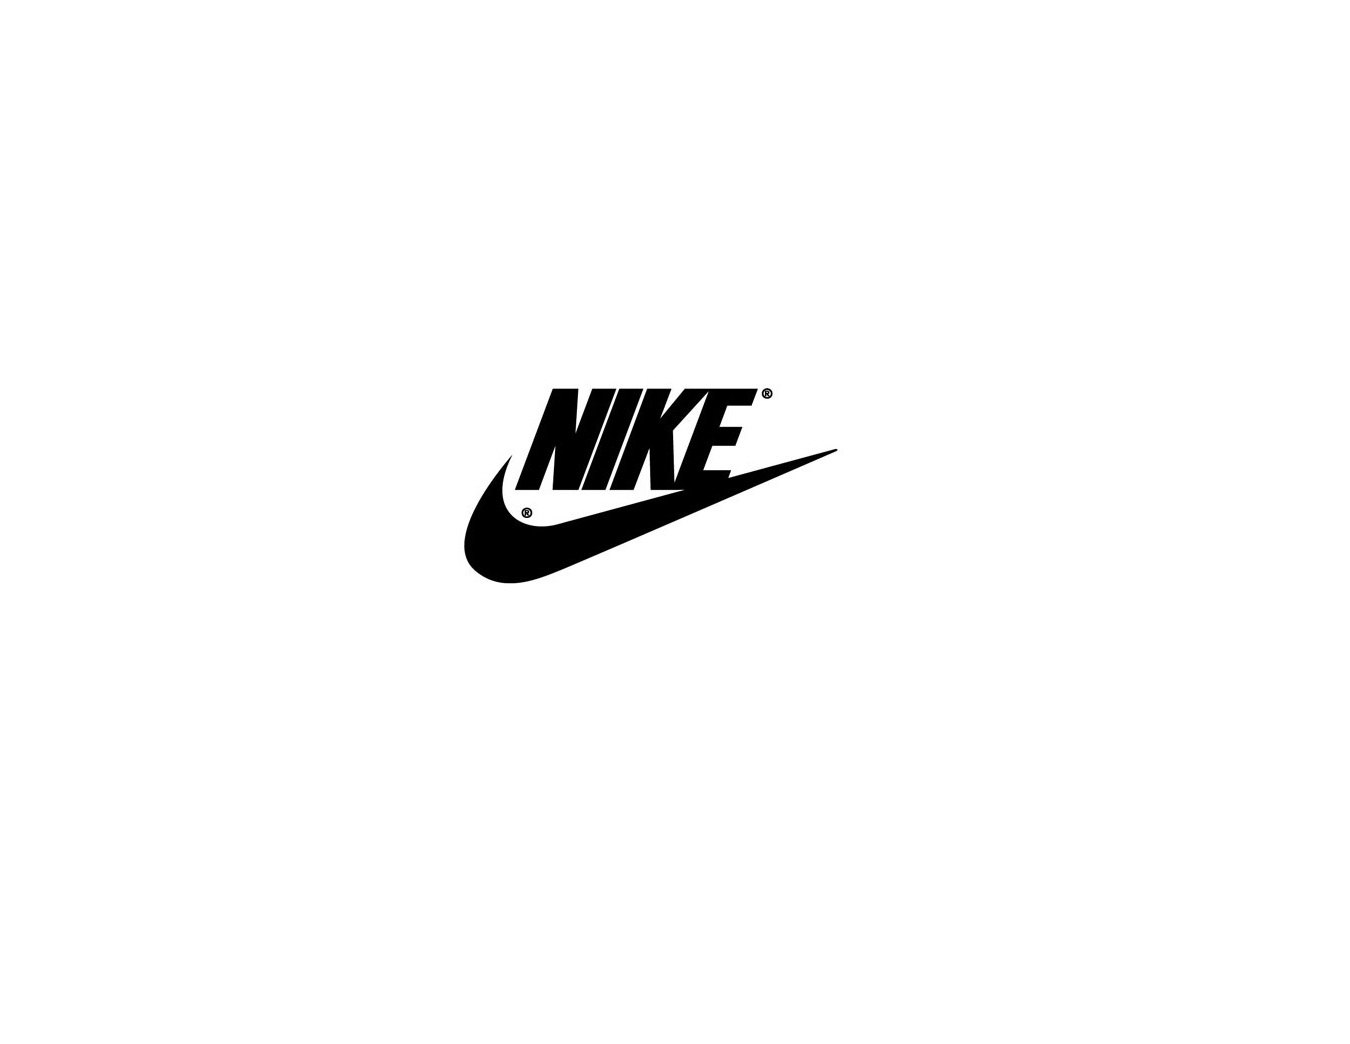 Распечатать найк. Товарный знак найк. Nike логотип на белом фоне. Трафарет найк. Наклейки найк.